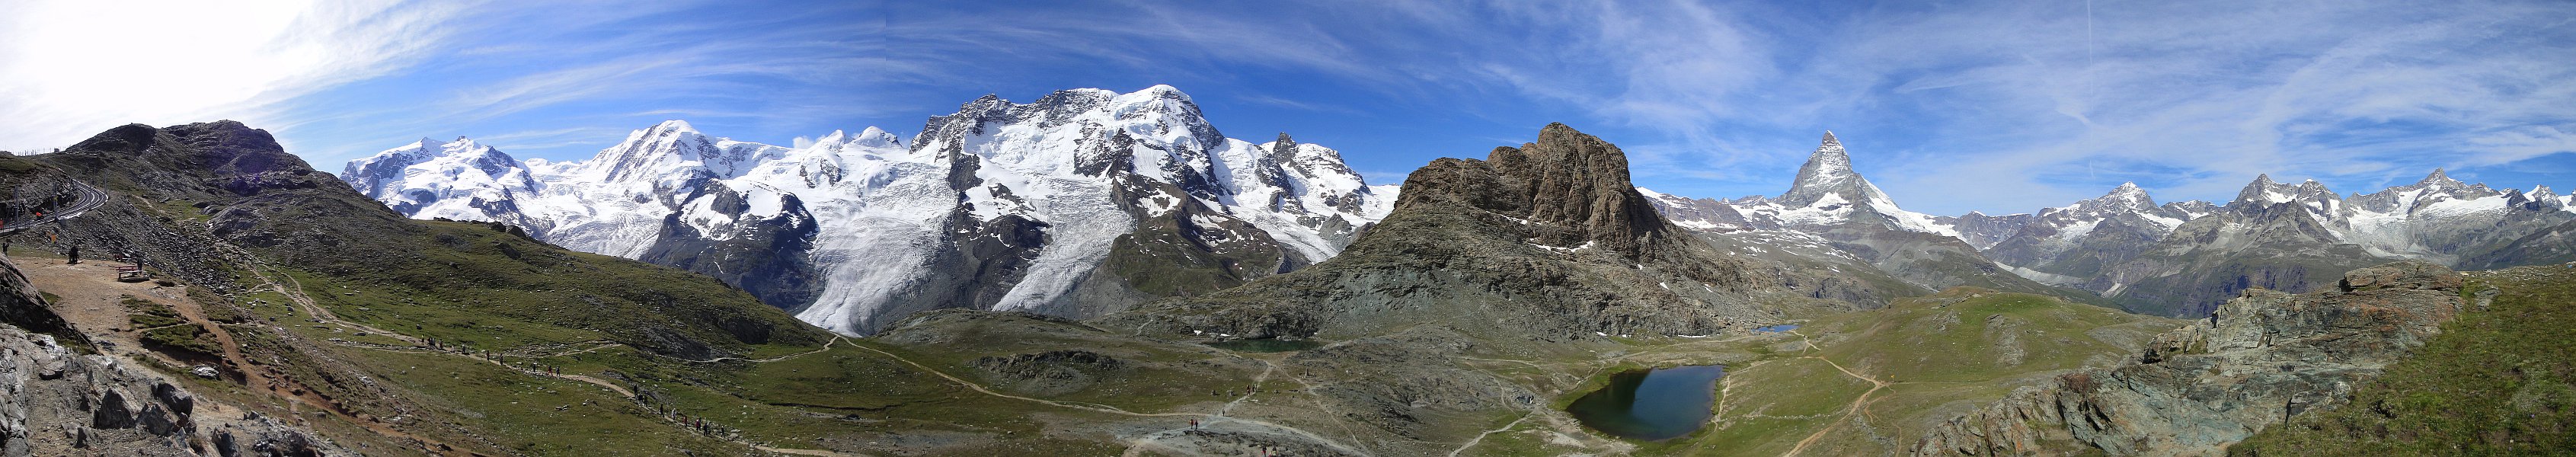 Rotenboden oberhalb Zermatt